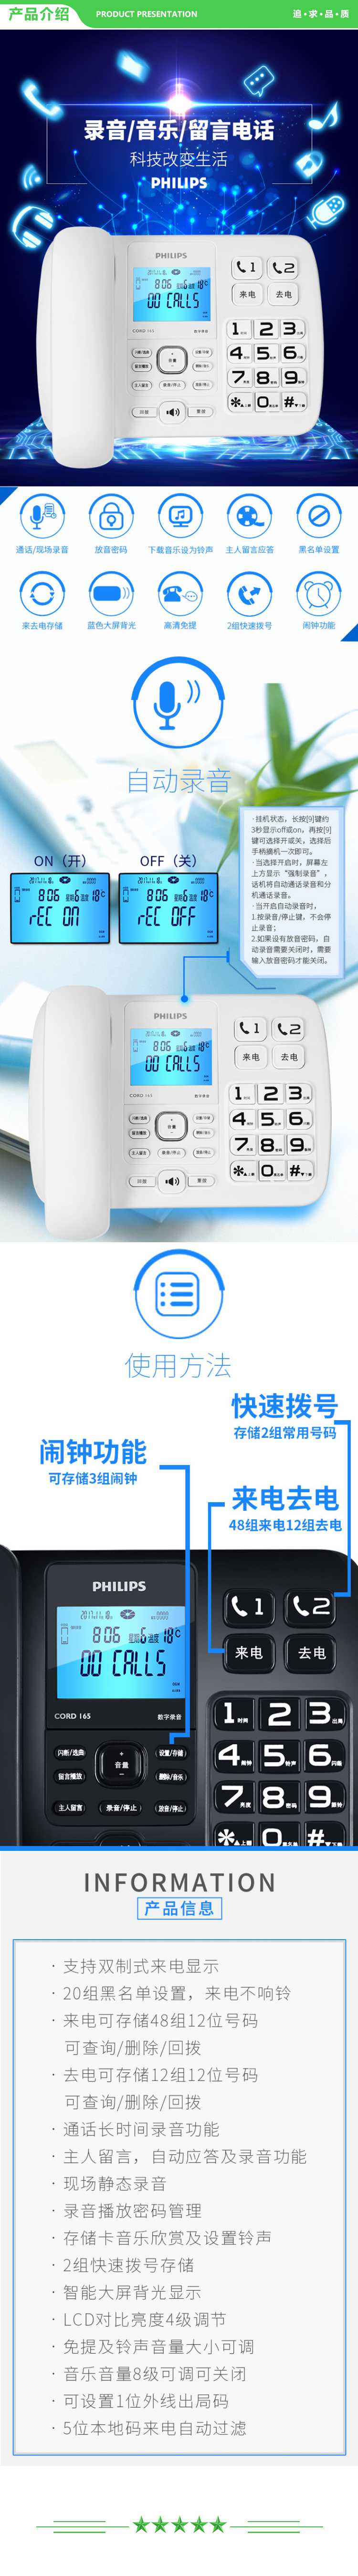 飞利浦 PHILIPS CORD165 录音电话机 固定座机 自动 手动录音 放音密码保护 (白色) .jpg